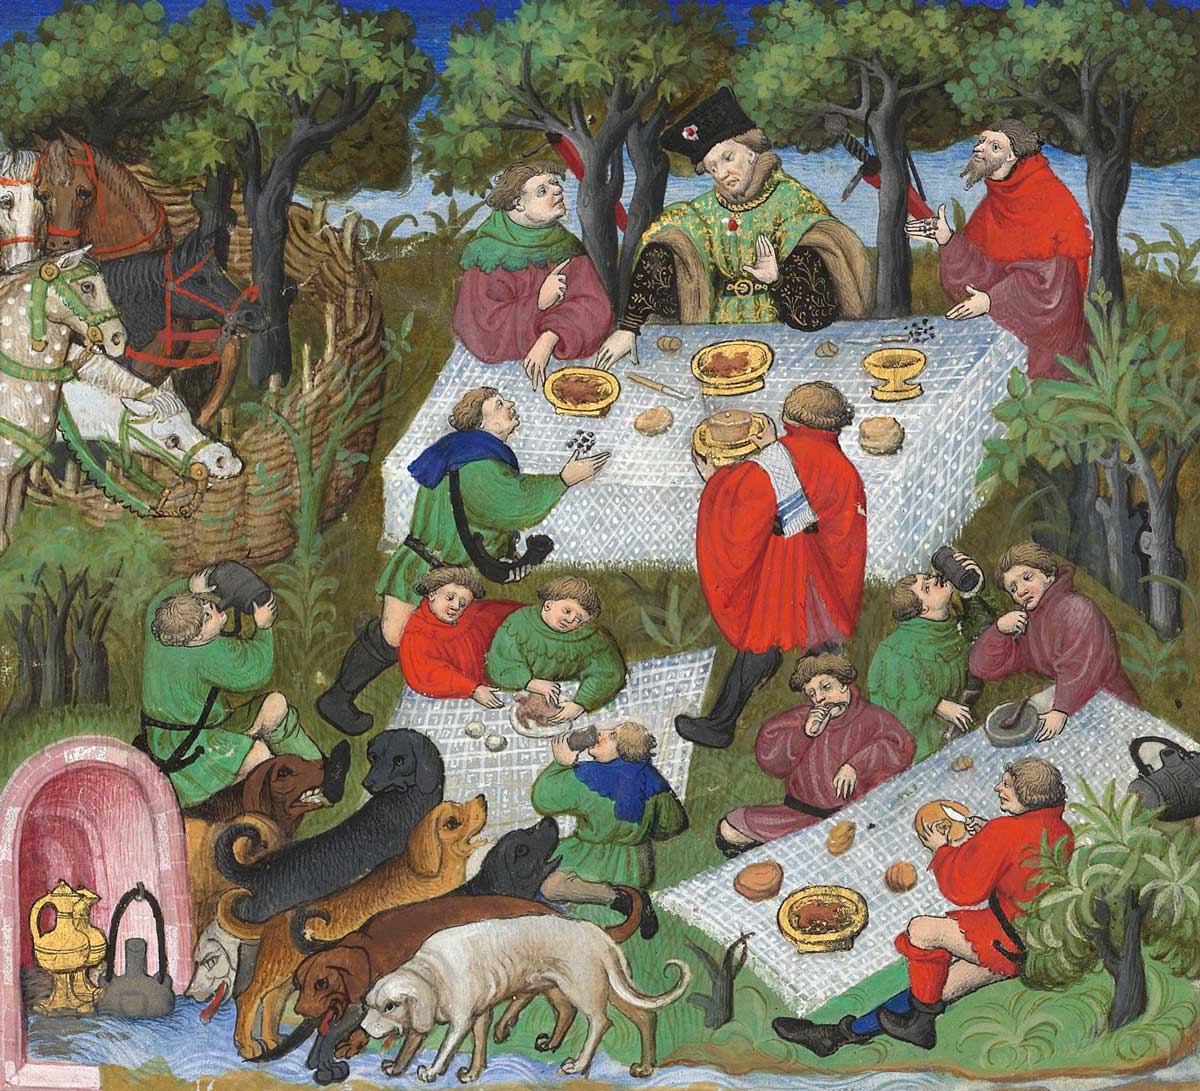 'Le repas de chasse' from the Livre de la Chasse, Gaston III, Count of Foix. BnF, Fr. 616, fol. 67. 